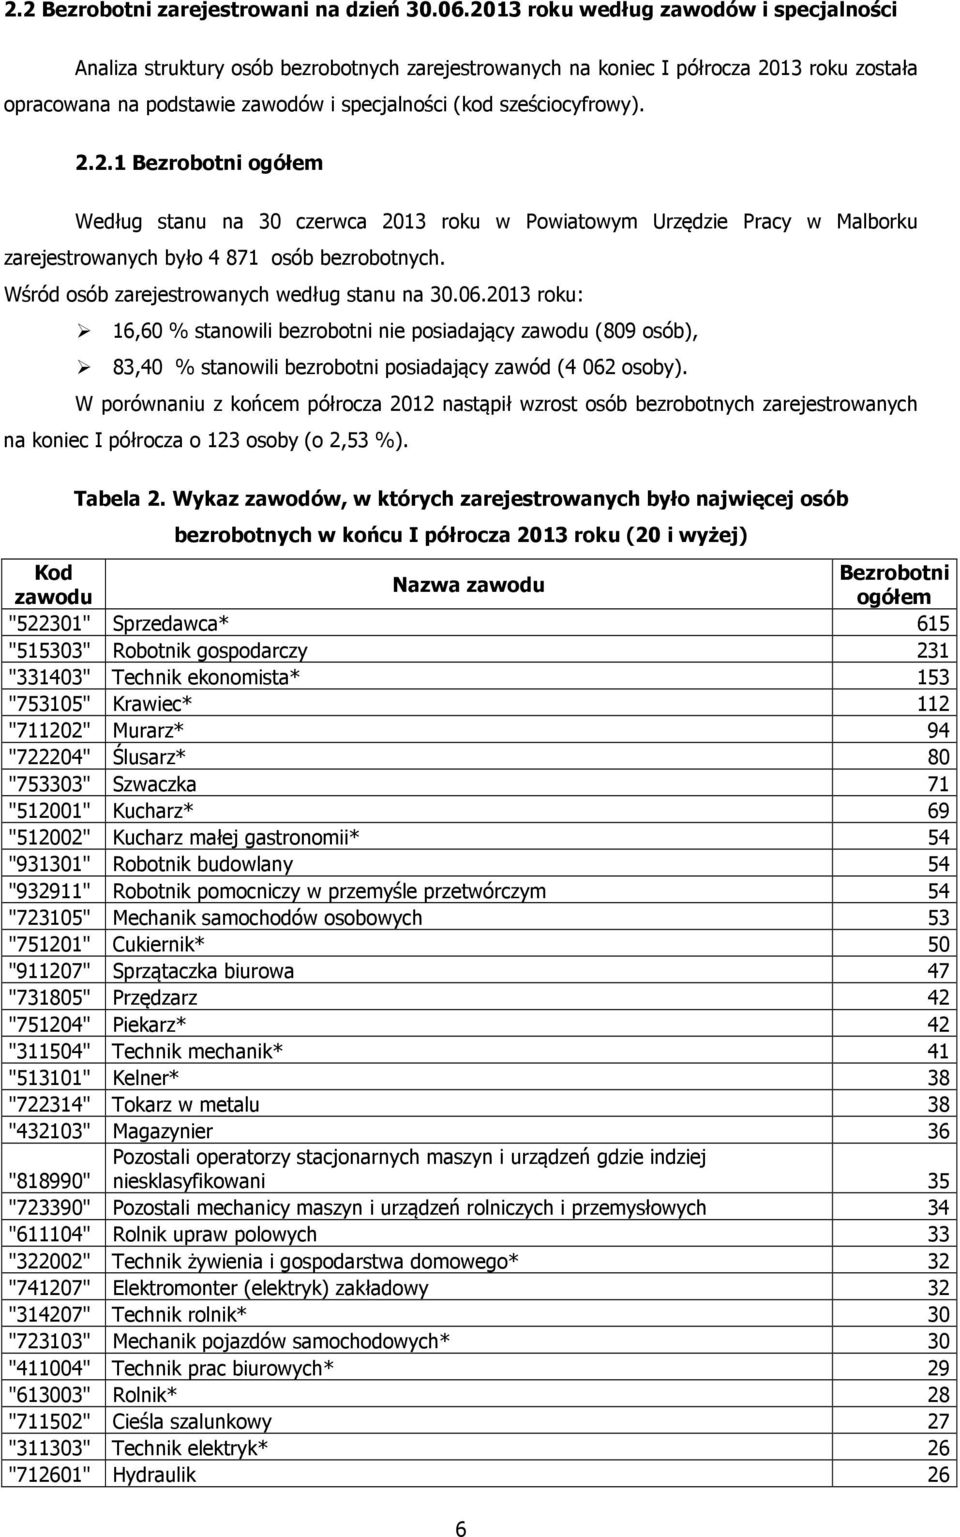 2.2.1 Bezrobotni ogółem Według stanu na 30 czerwca 2013 roku w Powiatowym Urzędzie Pracy w Malborku zarejestrowanych było 4 871 osób bezrobotnych. Wśród osób zarejestrowanych według stanu na 30.06.